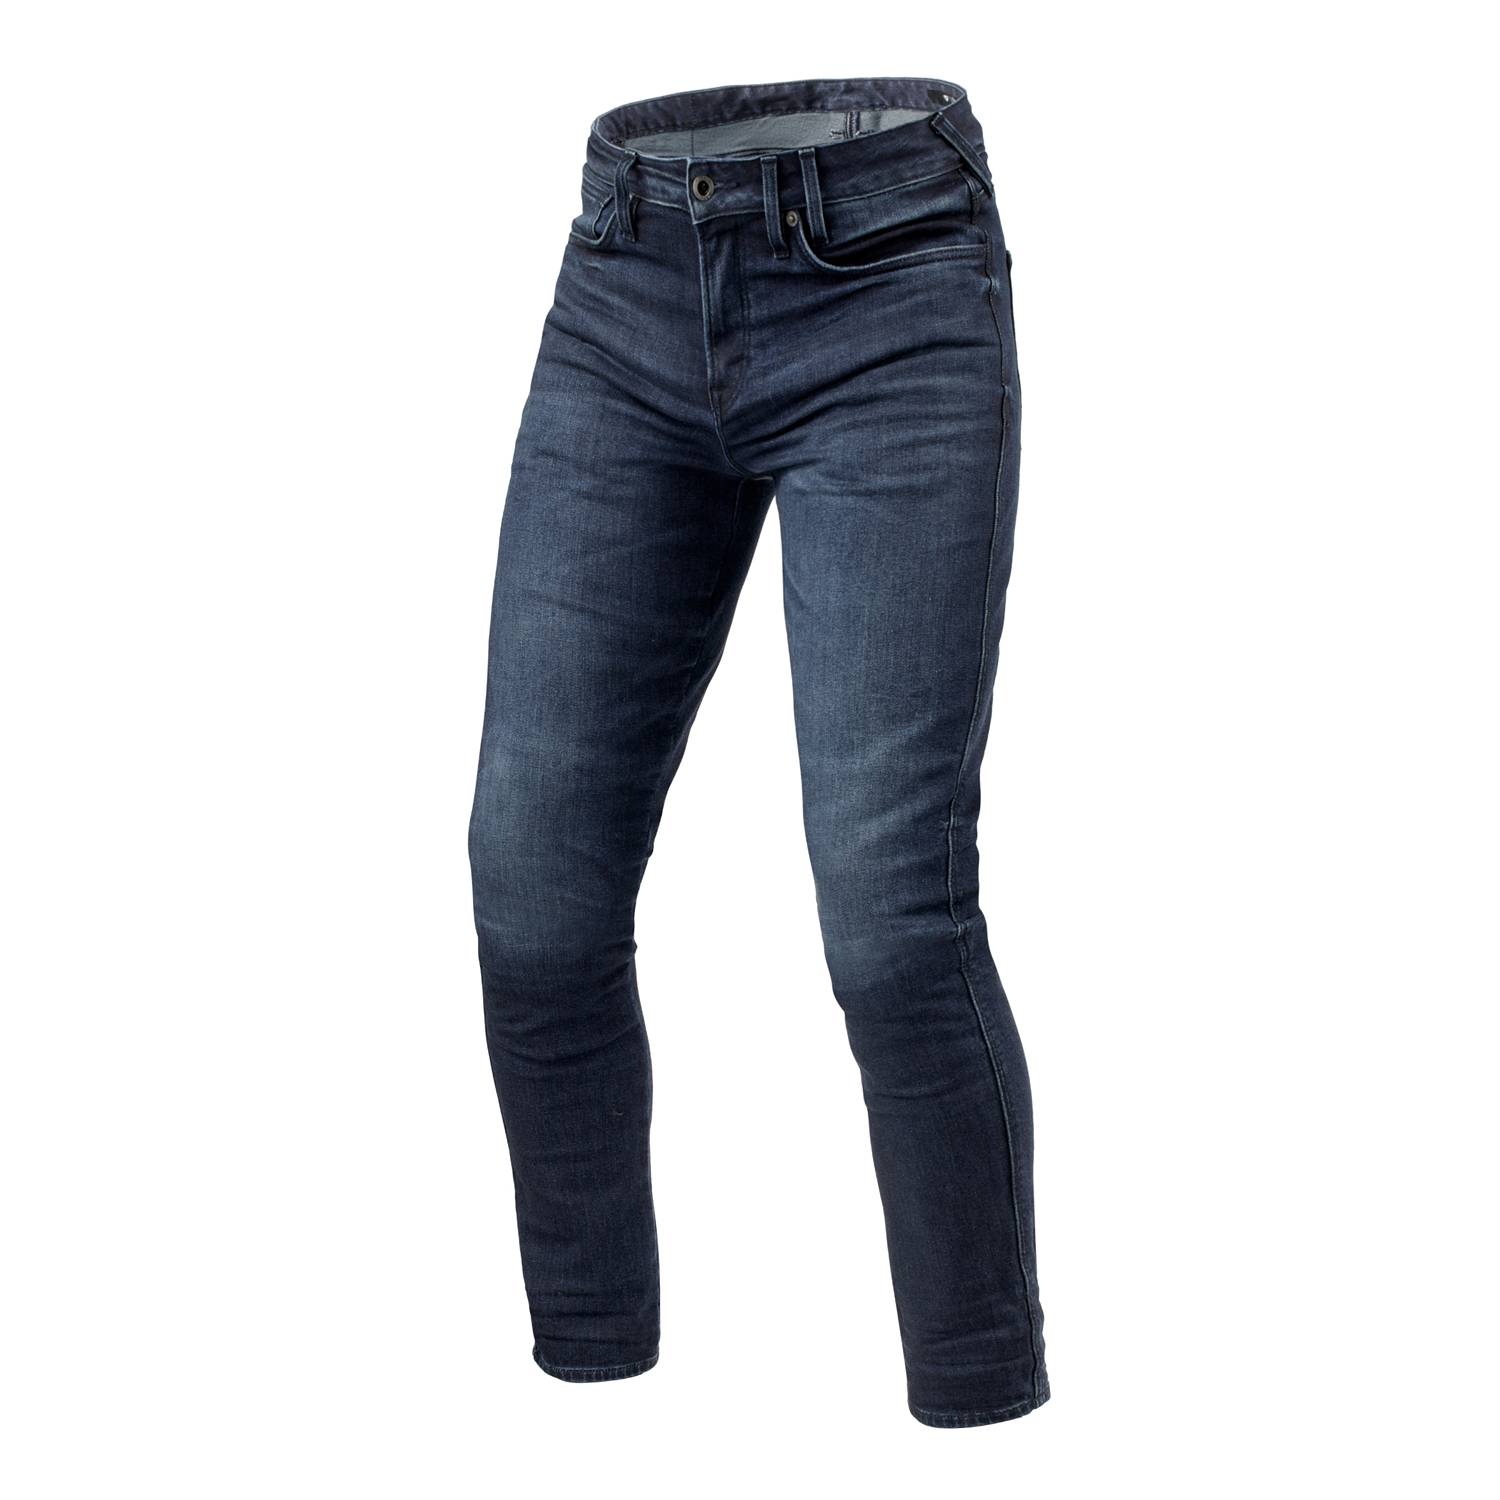 Image of REV'IT! Jeans Carlin SK Dark Blue Used L32 Motorcycle Jeans Size L32/W34 EN